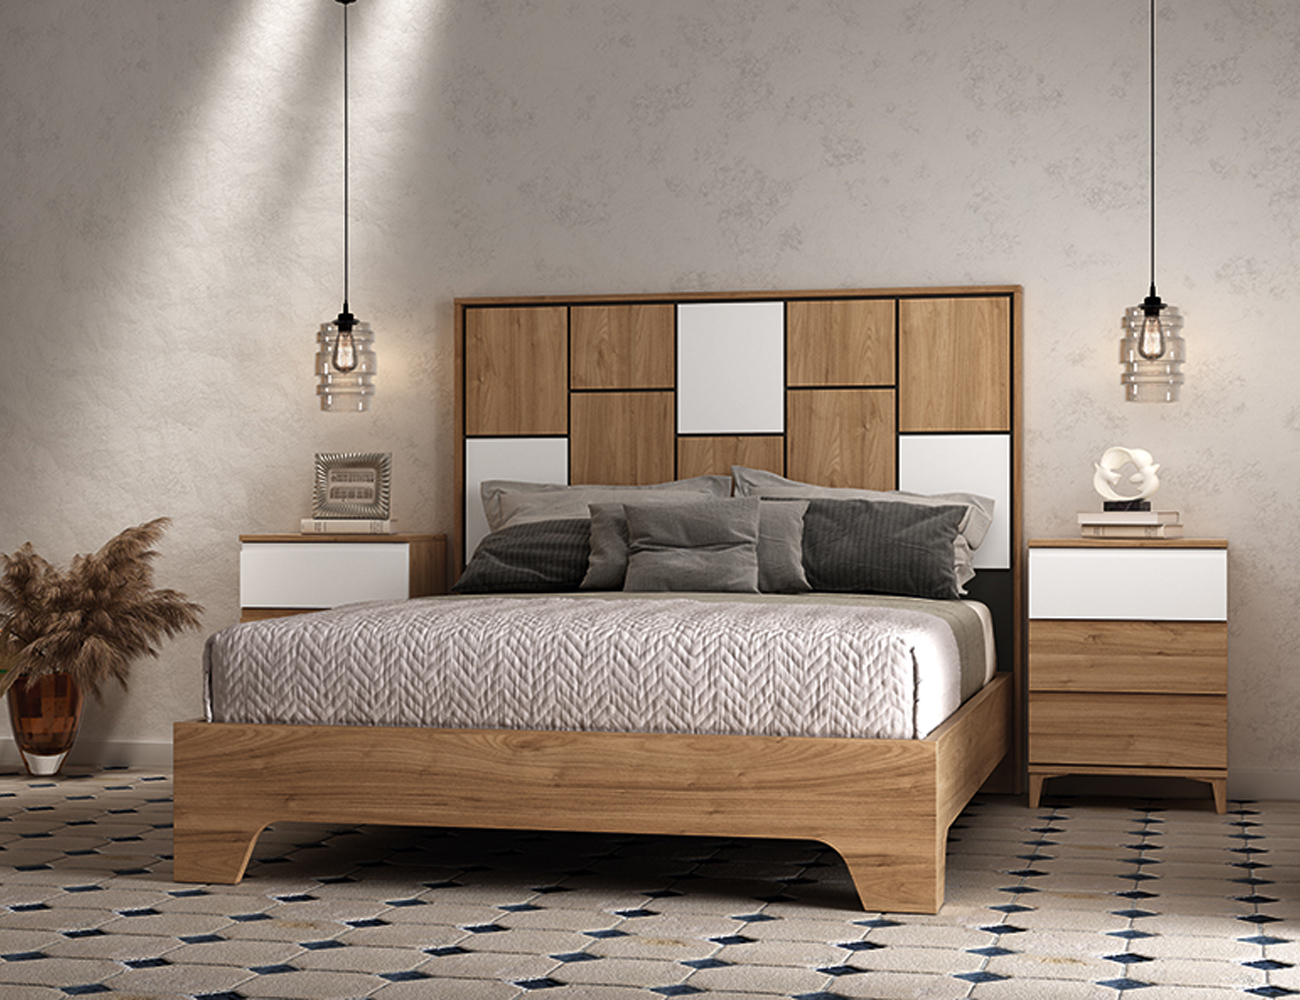 Conjuntos de cabeceros mas mesitas a juego para dormitorio de matrimonio,  en los estilos más actuales. En madera con acabados naturales como el roble  y el blanco